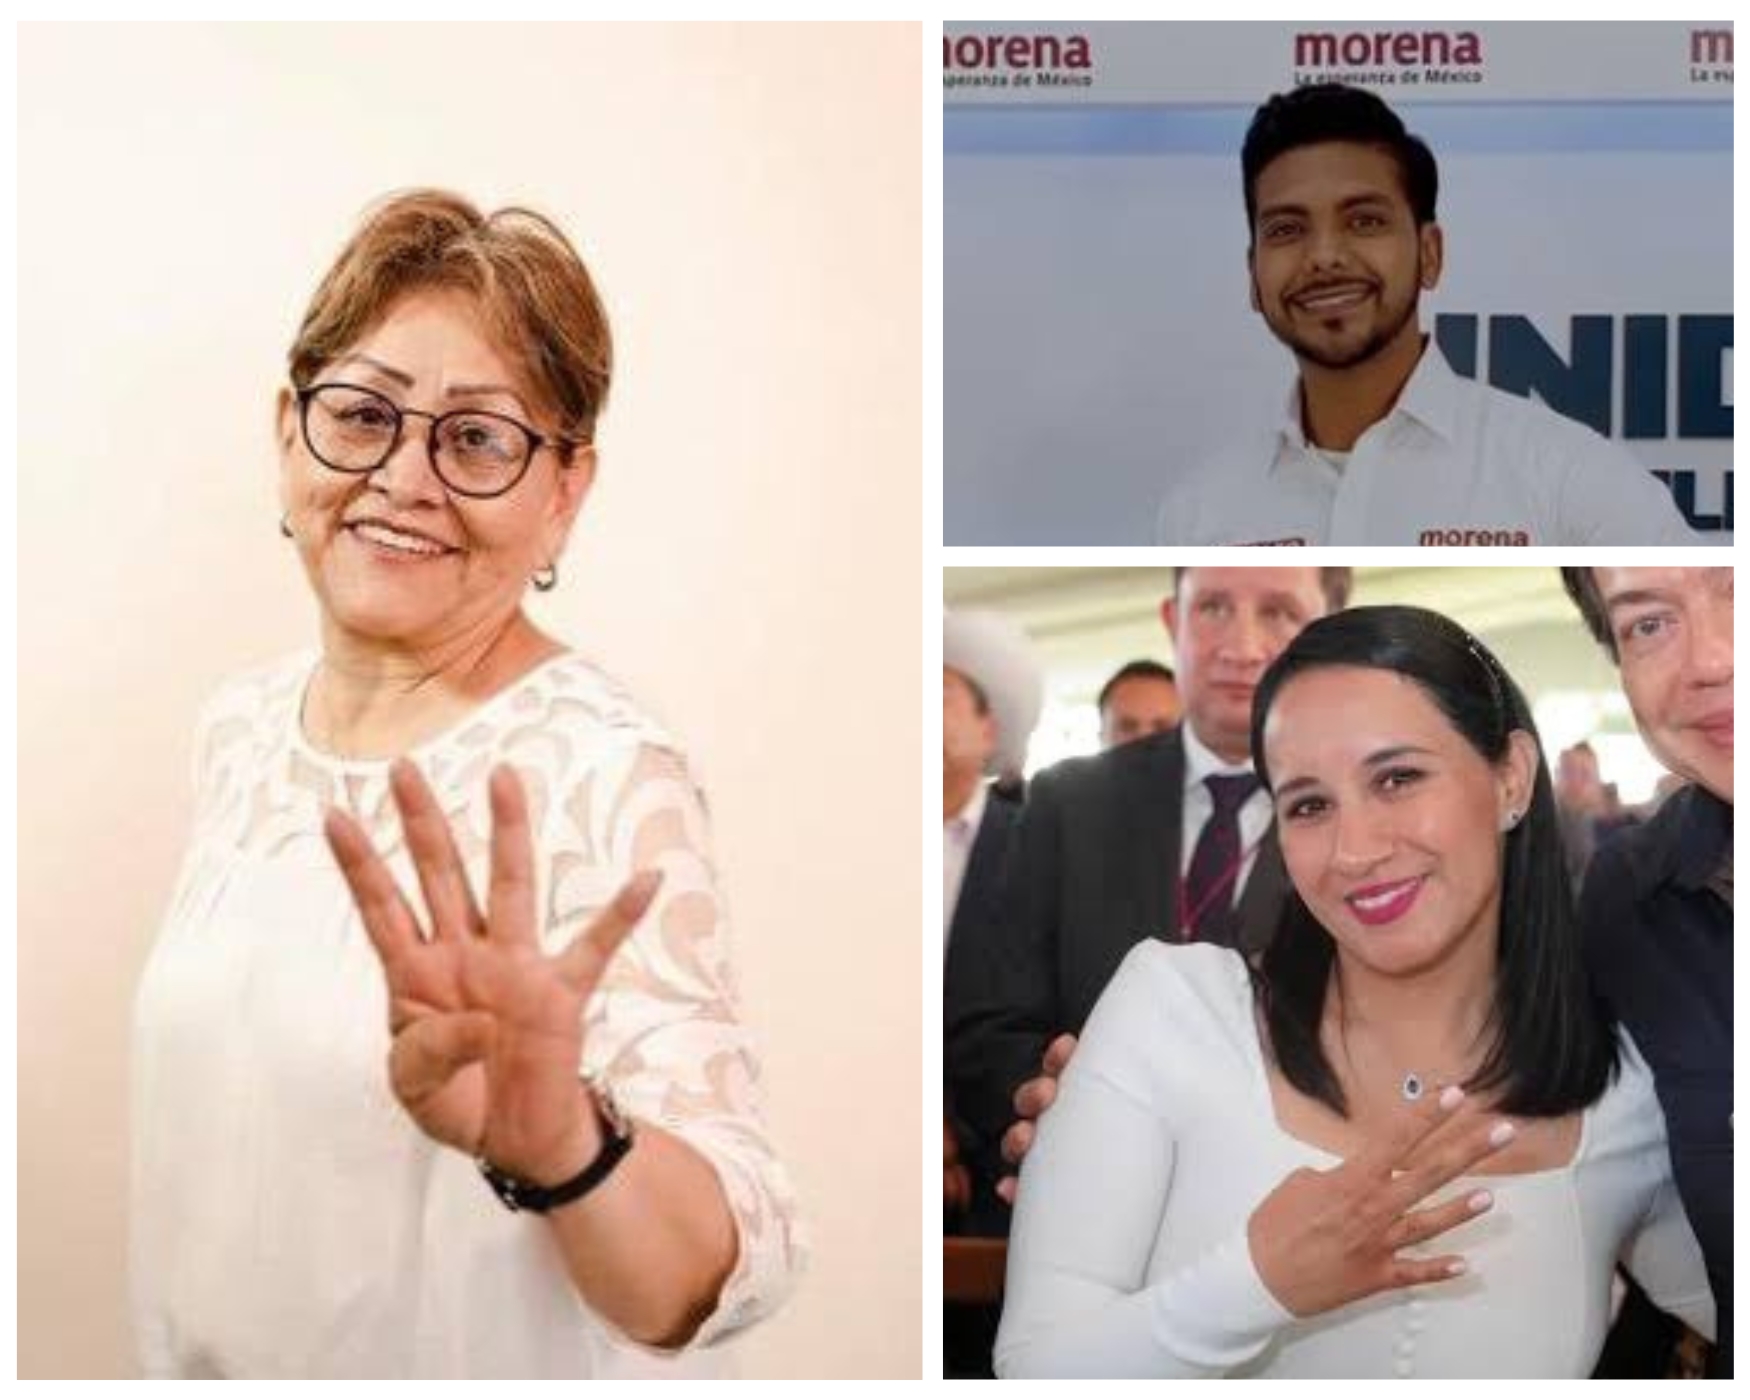 Elecciones 2024: Filtran lista de posibles candidatos de Morena en Edomex